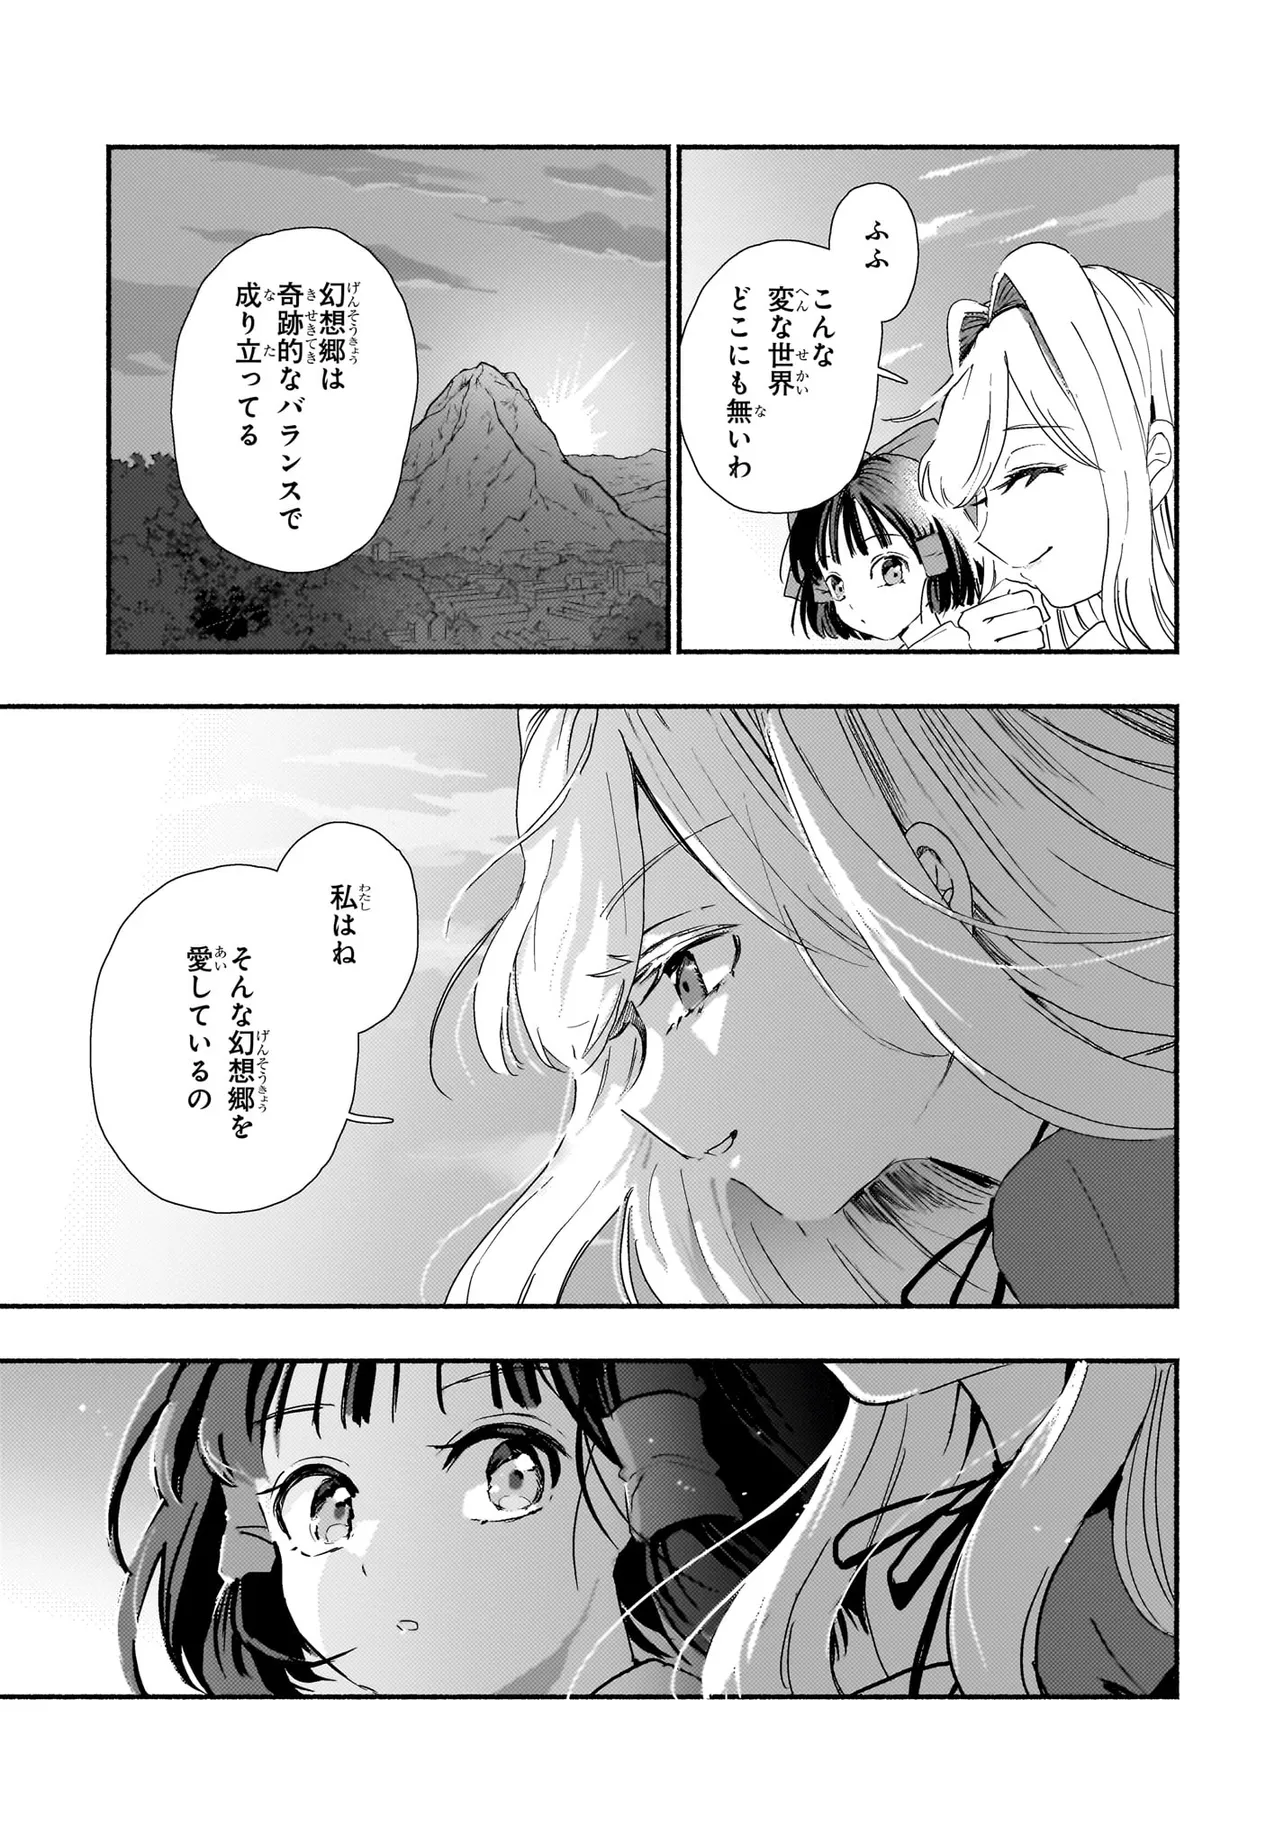 SPELL (AZUMA Aya) - Chapter 3 - Page 16